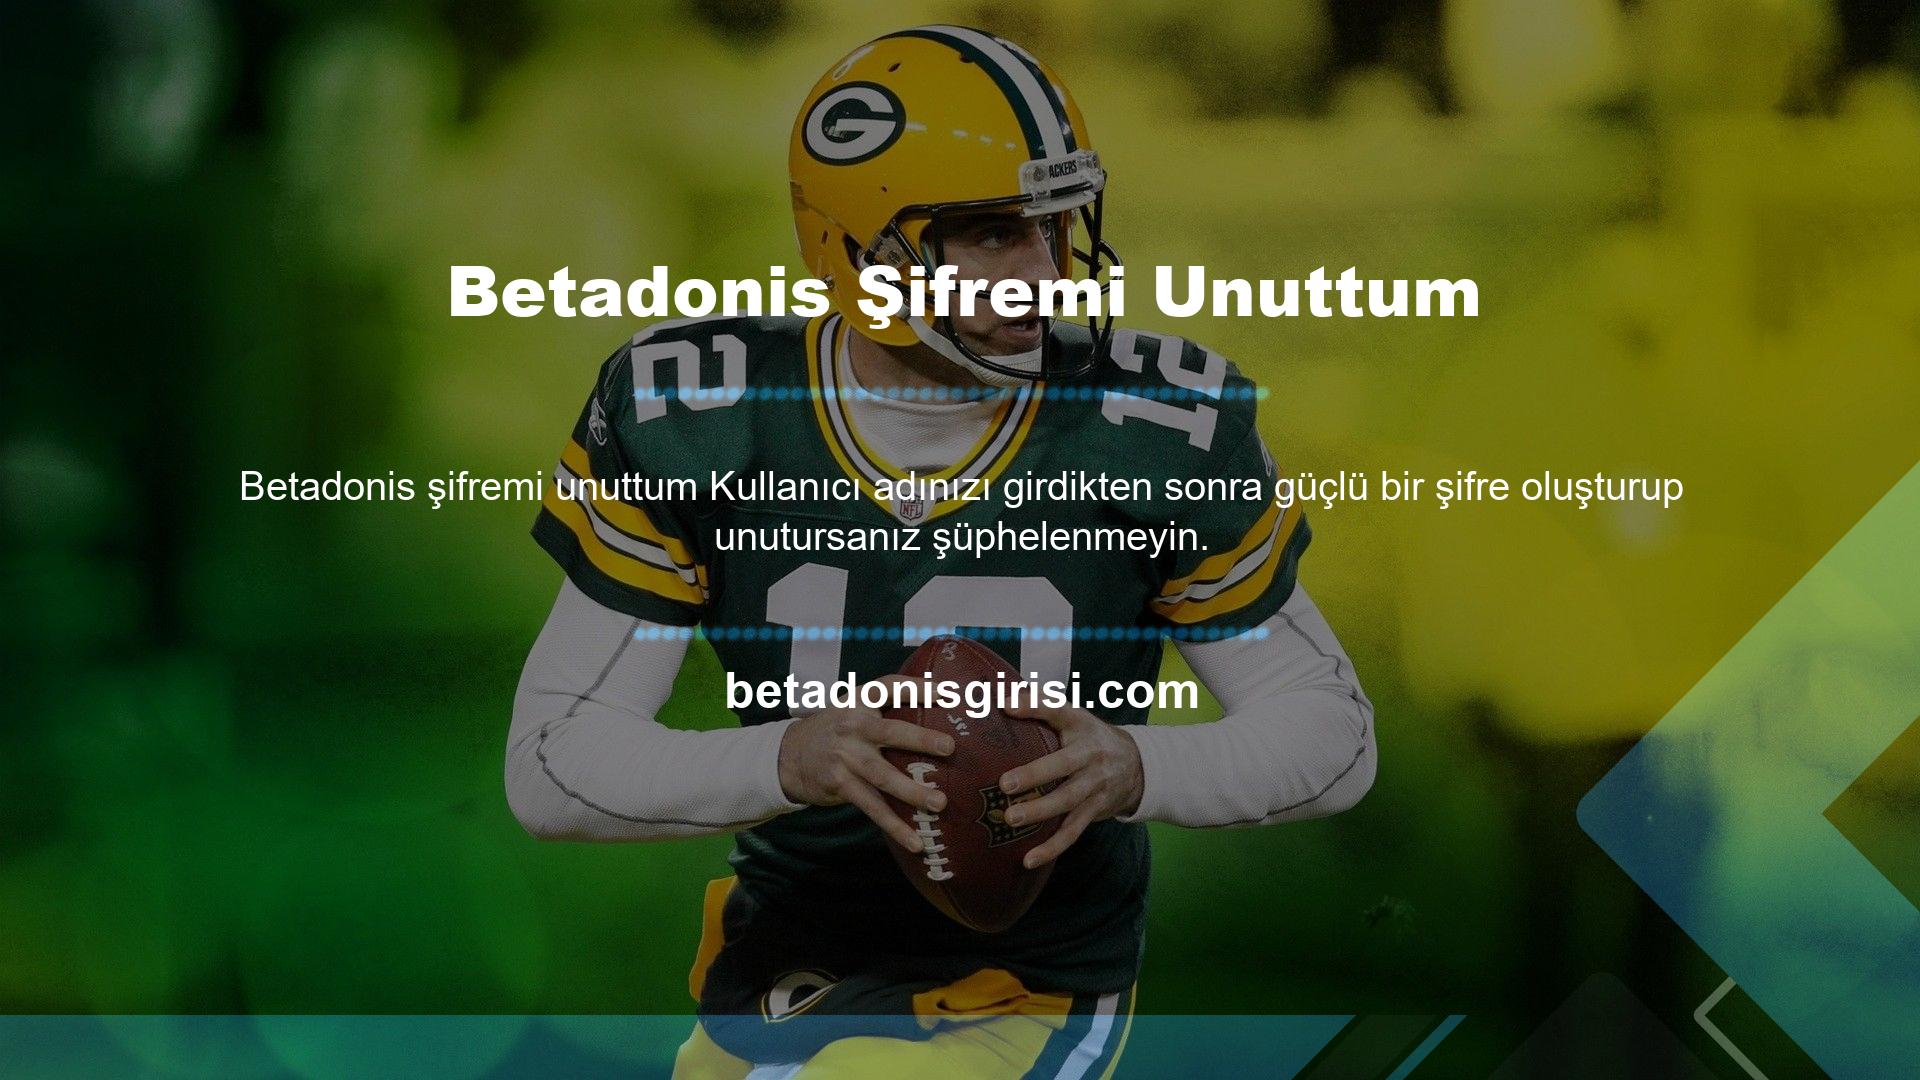 Betadonis platformunda Betadonis şifresini unutanlar için şifre sıfırlama sistemi bulunmaktadır